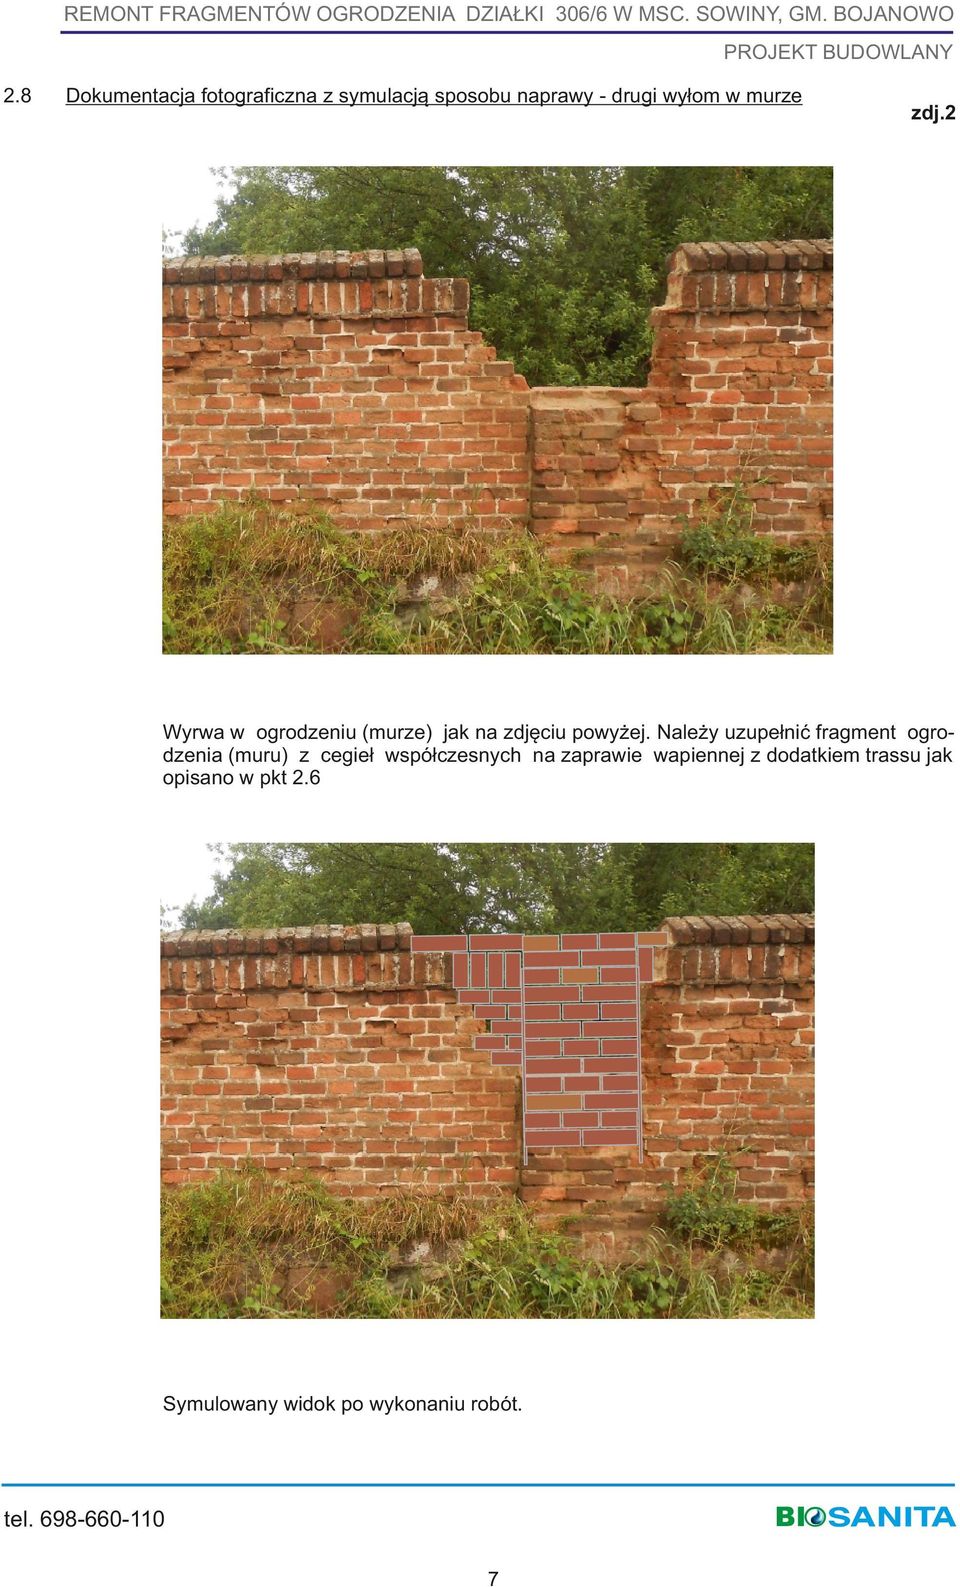 Należy uzupełnić fragment ogrodzenia (muru) z cegieł współczesnych na